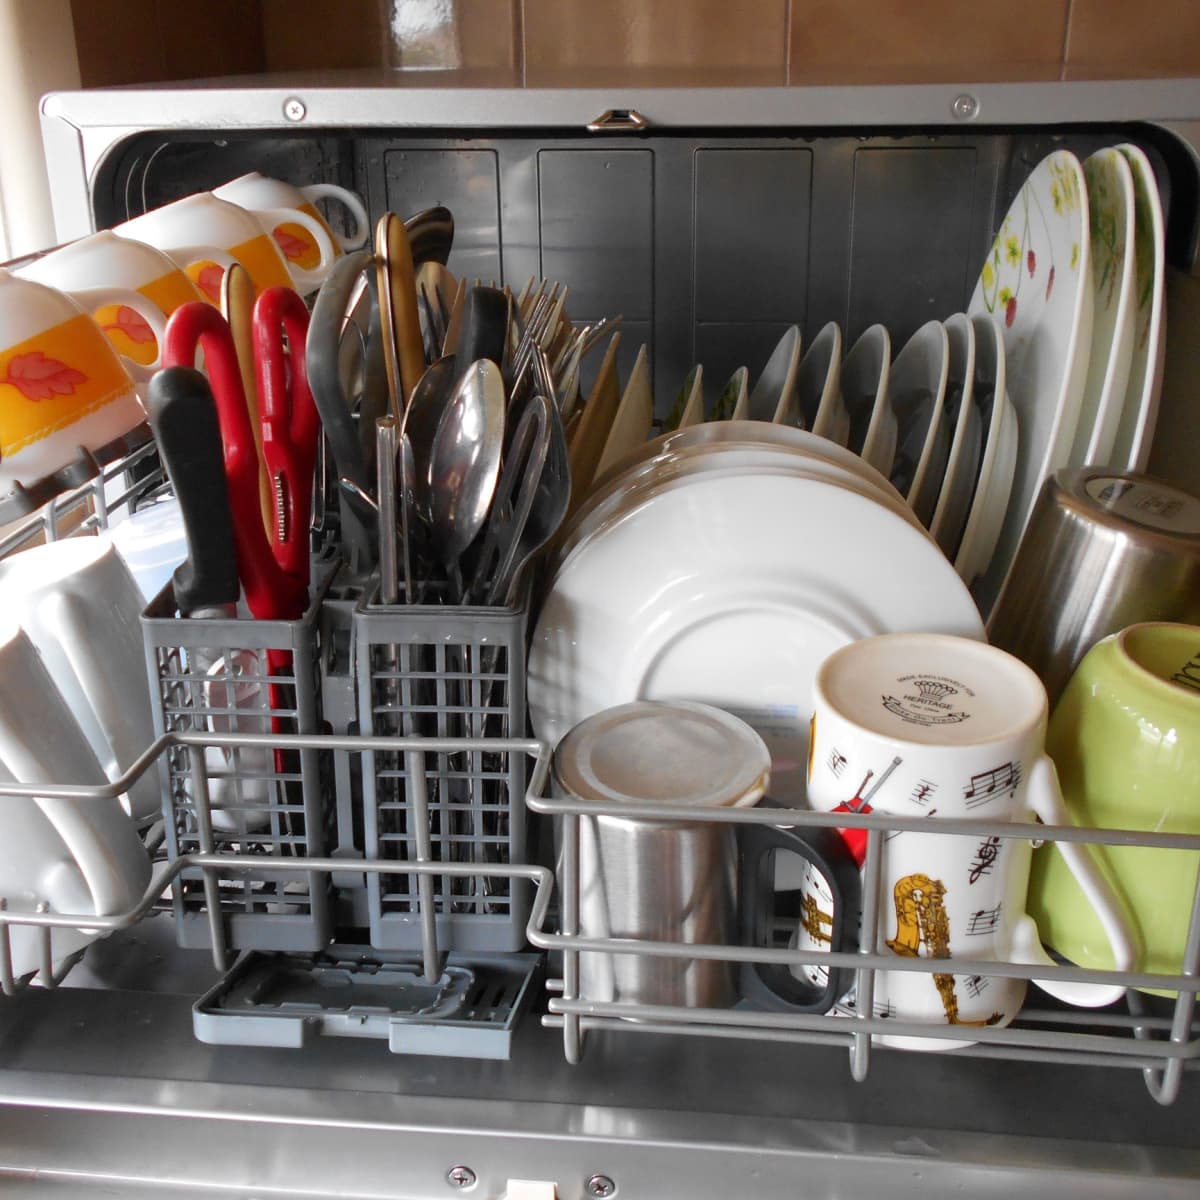 Кастрюли можно мыть в посудомойке. Посуда в посудомойке. Компактная посудомоечная машина кастрюли. Малогабаритная посудомойка для какастрюль. Посудомойка для кастрюль и сковородок.